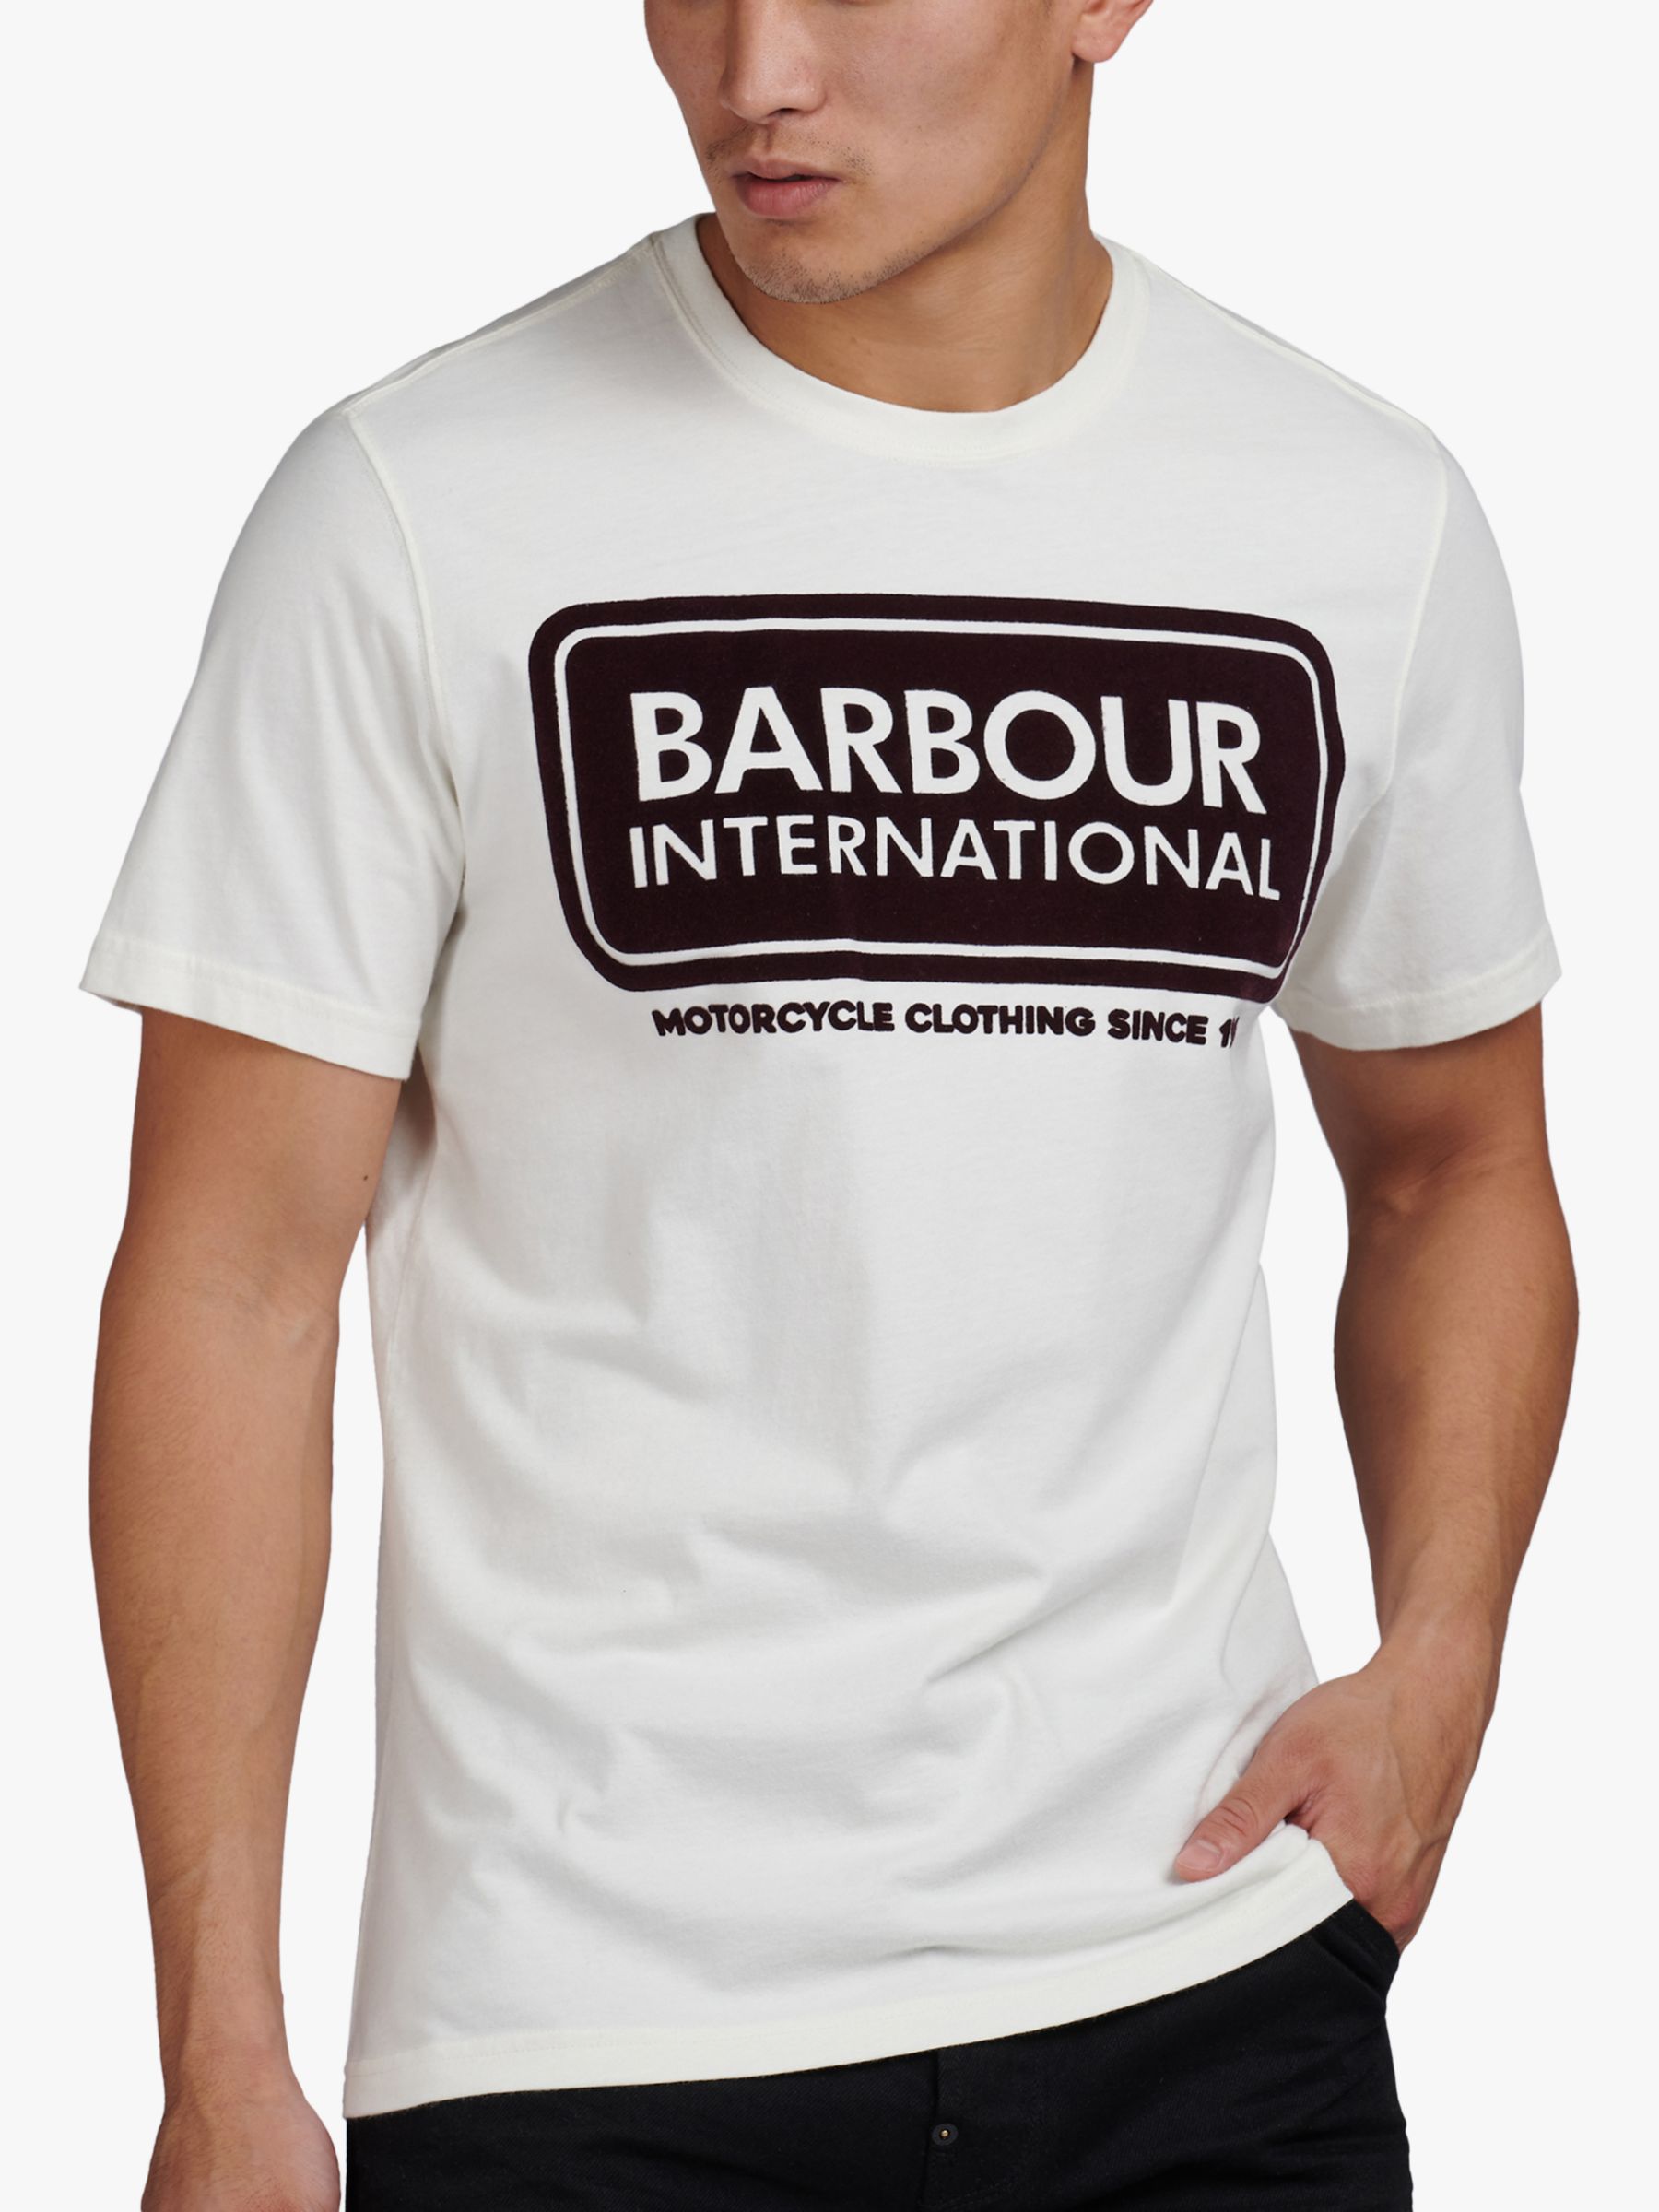 barbour t shirt sale uk